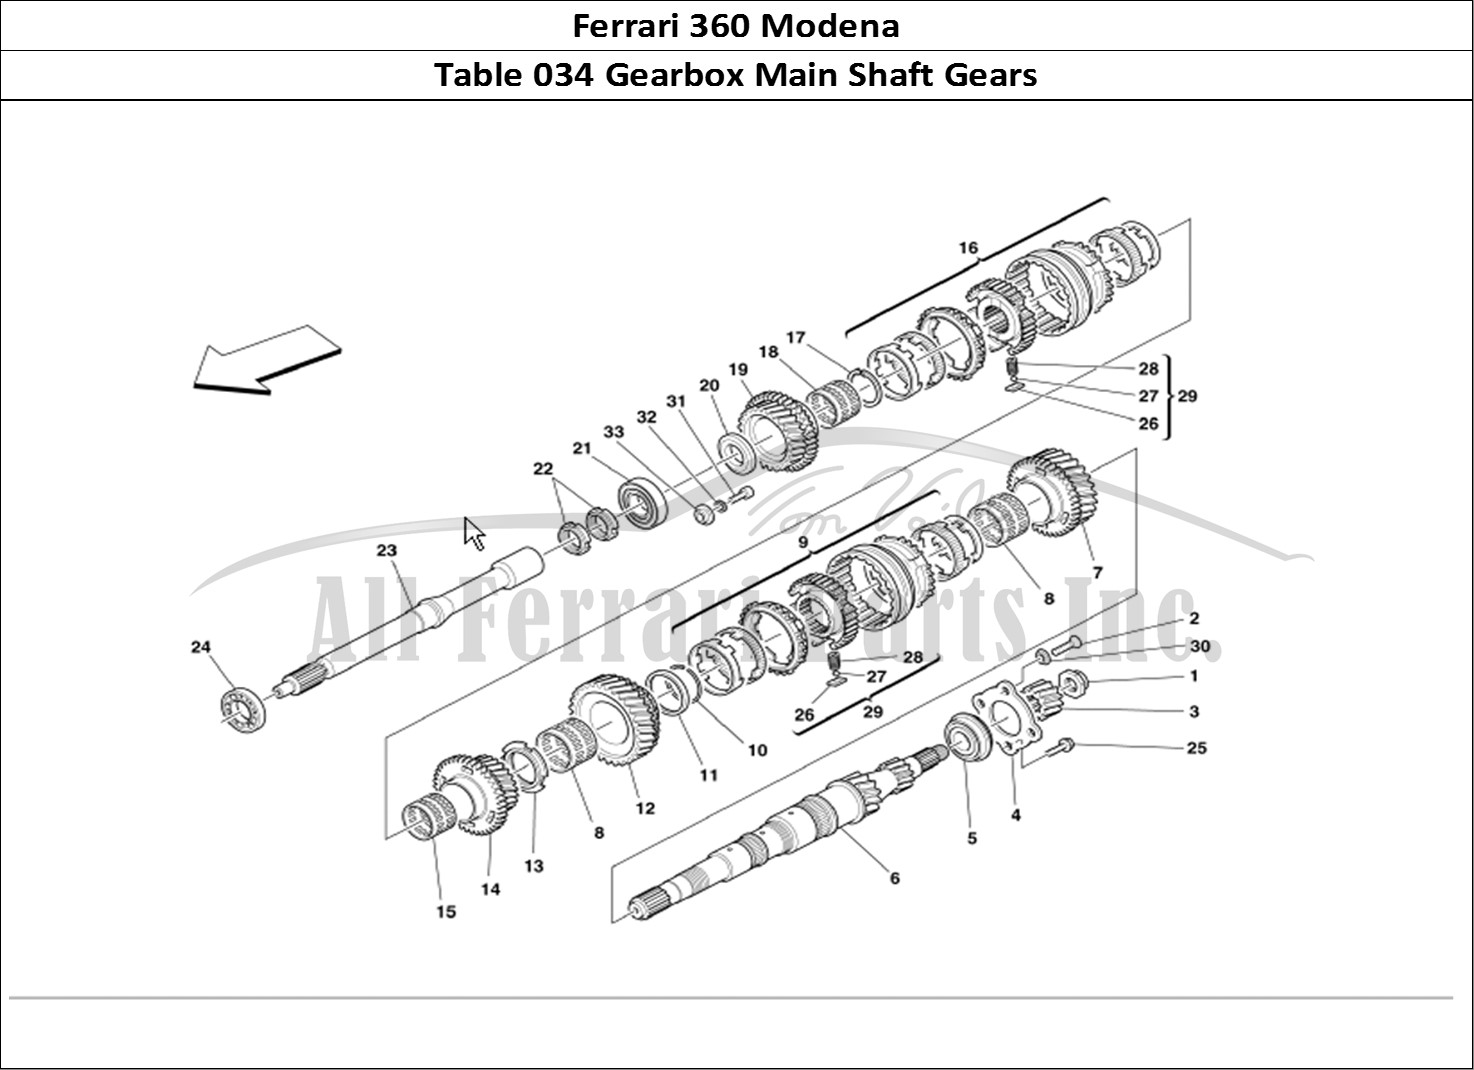 Buy original Ferrari 360 Modena 034 Gearbox Main Shaft Gears Ferrari